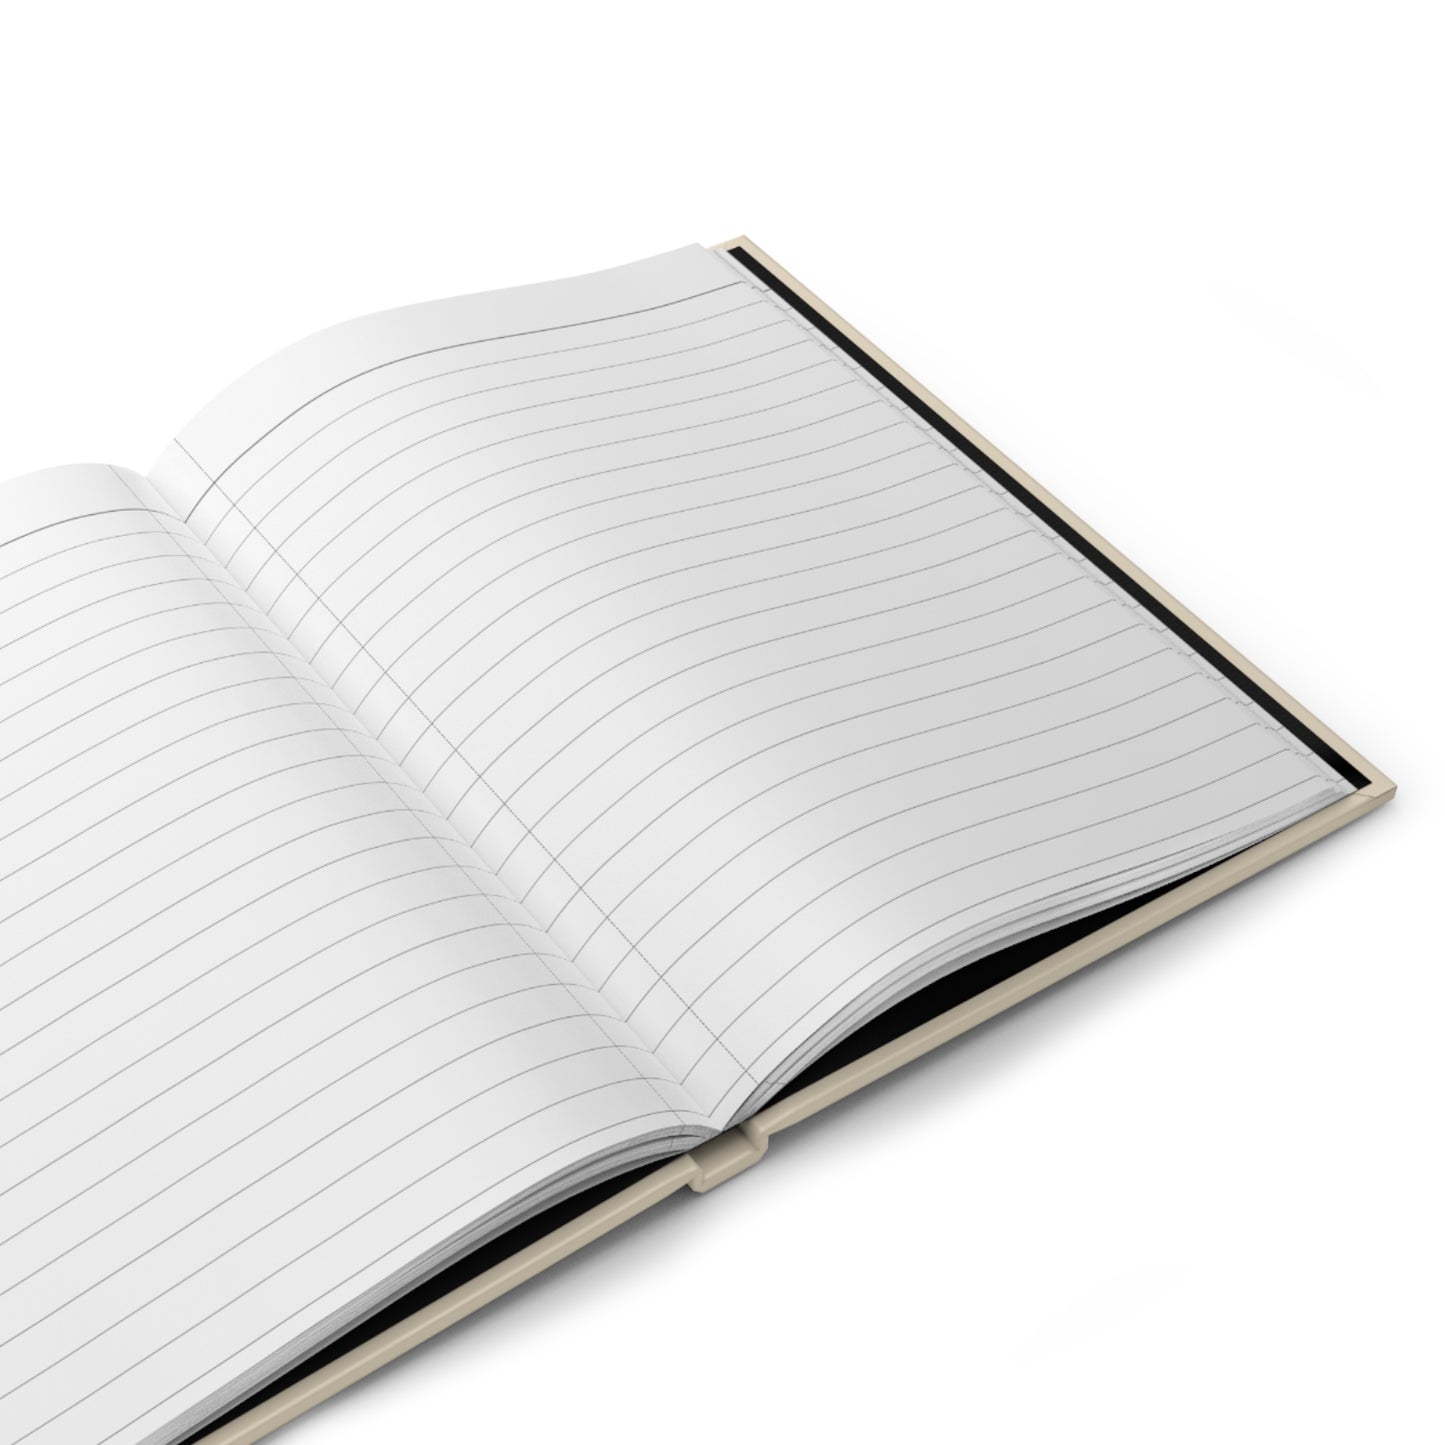 Death Tarot Hardcover Notebook |Tarot journal